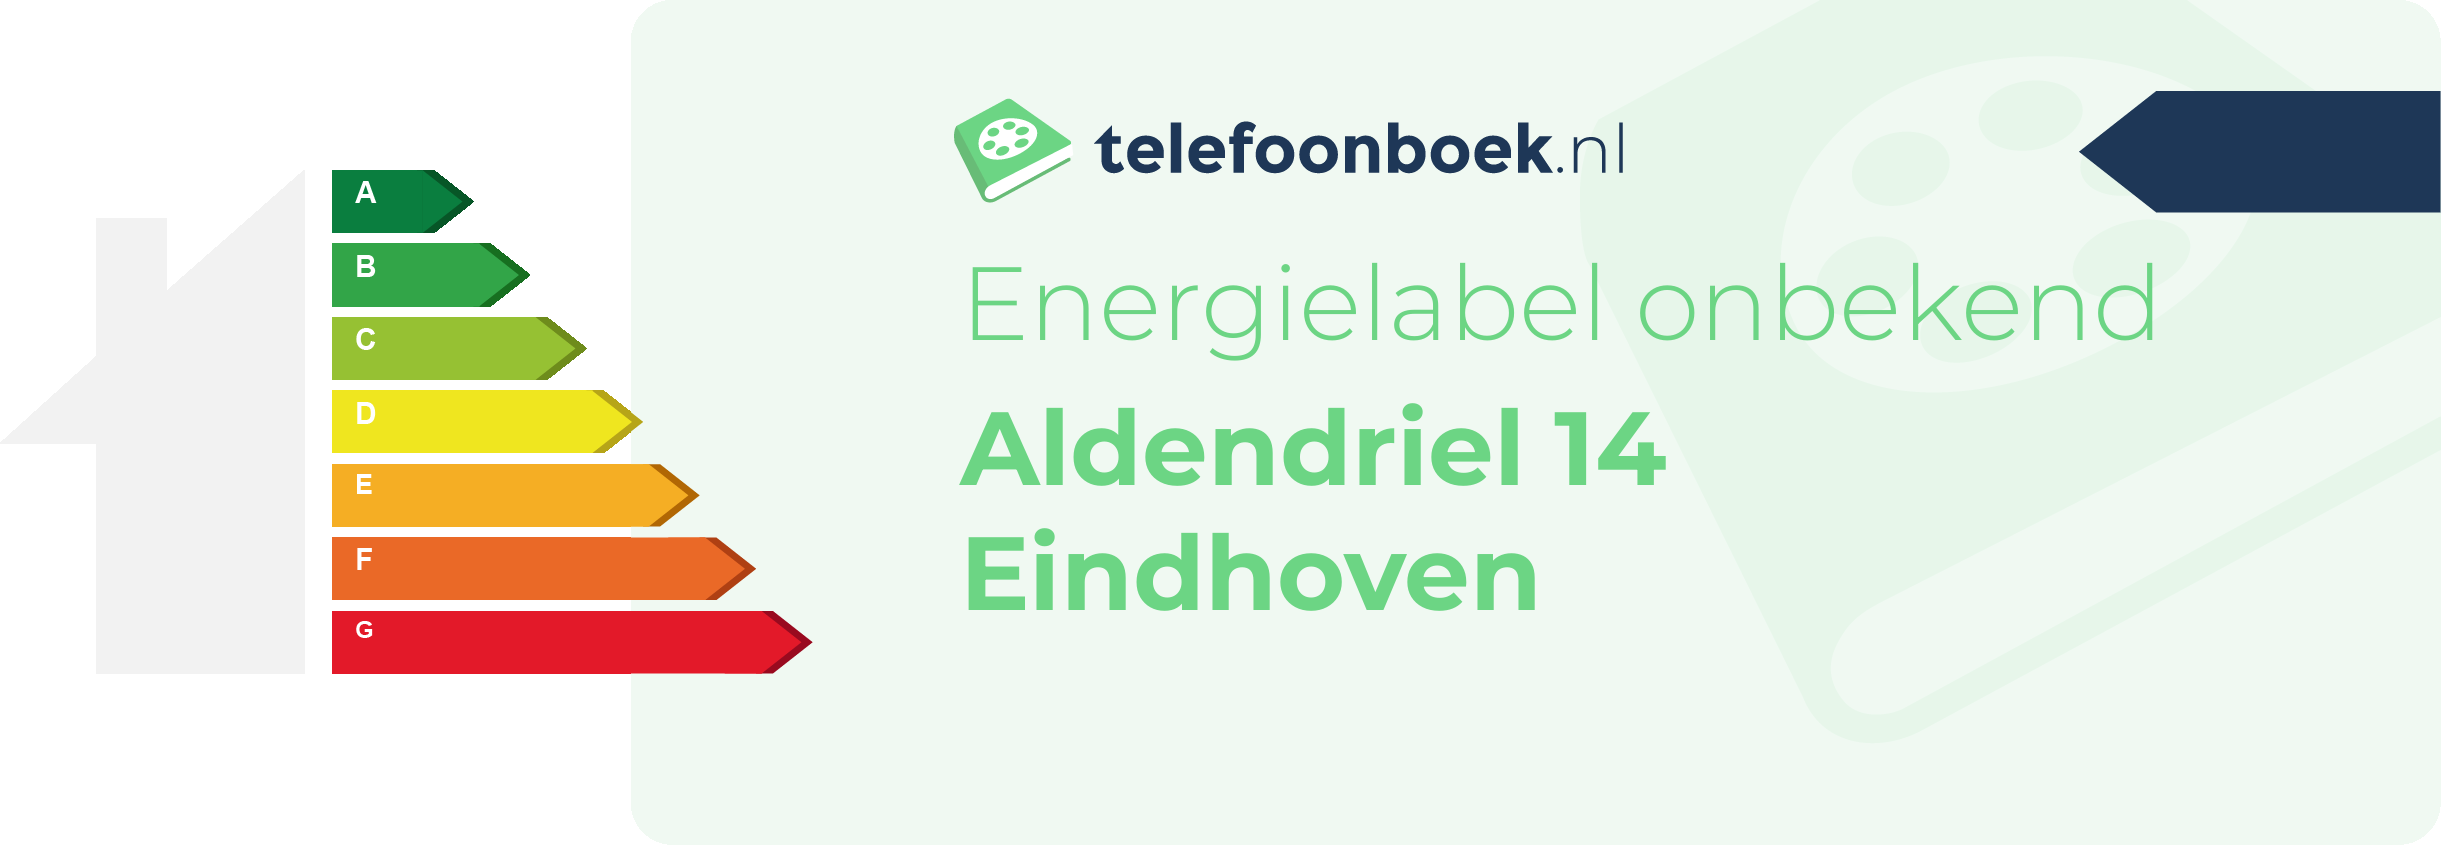 Energielabel Aldendriel 14 Eindhoven